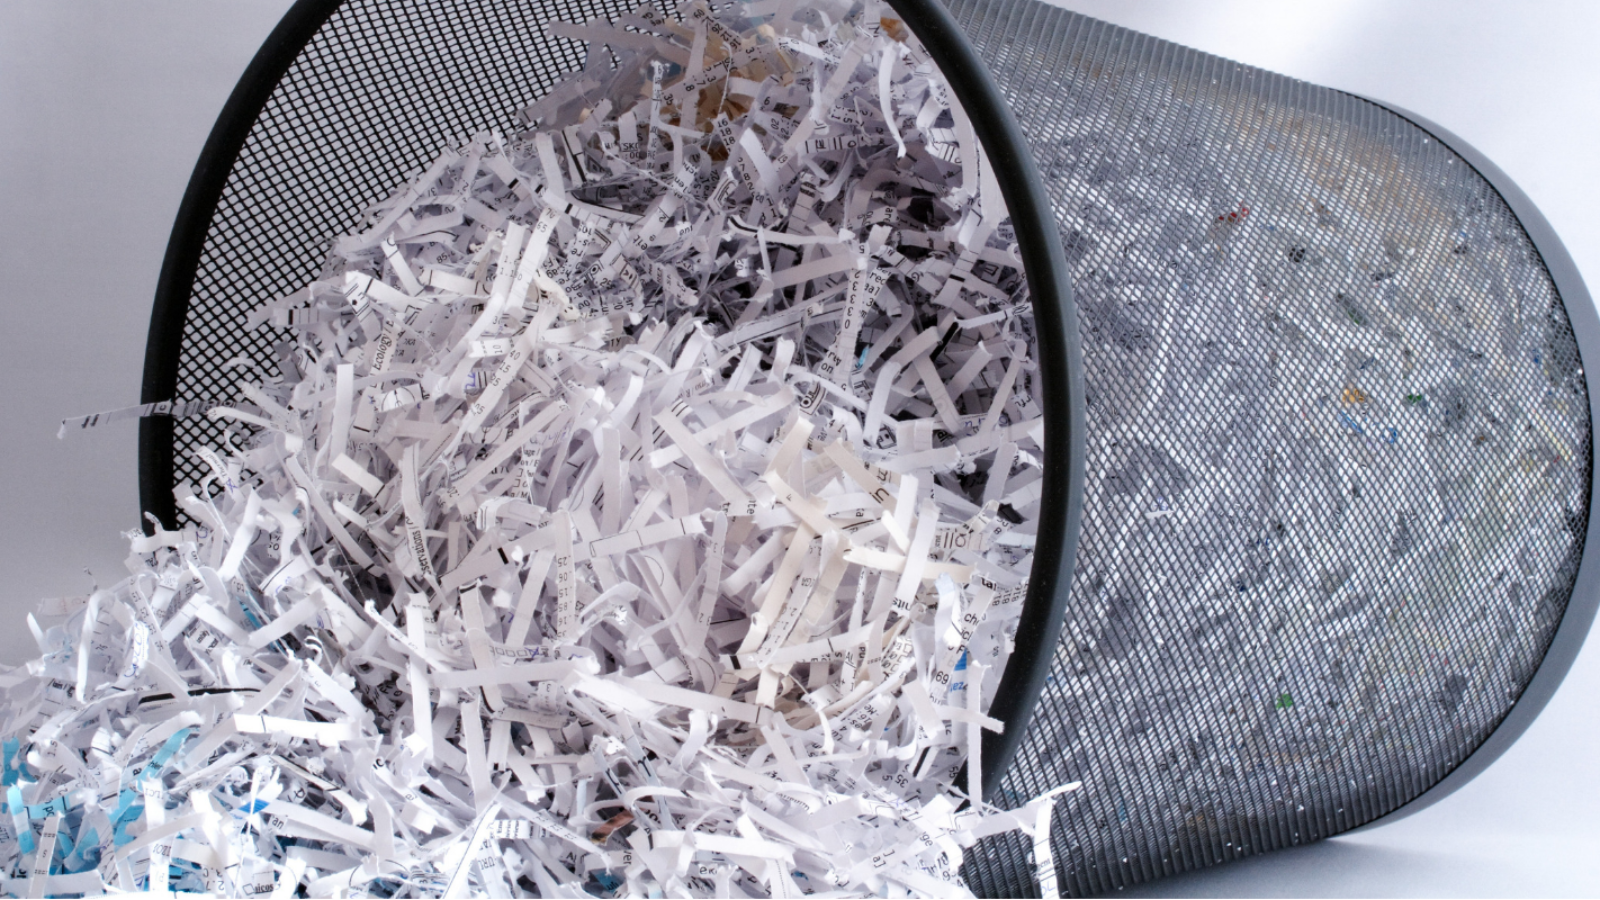 best free file shredder 2018